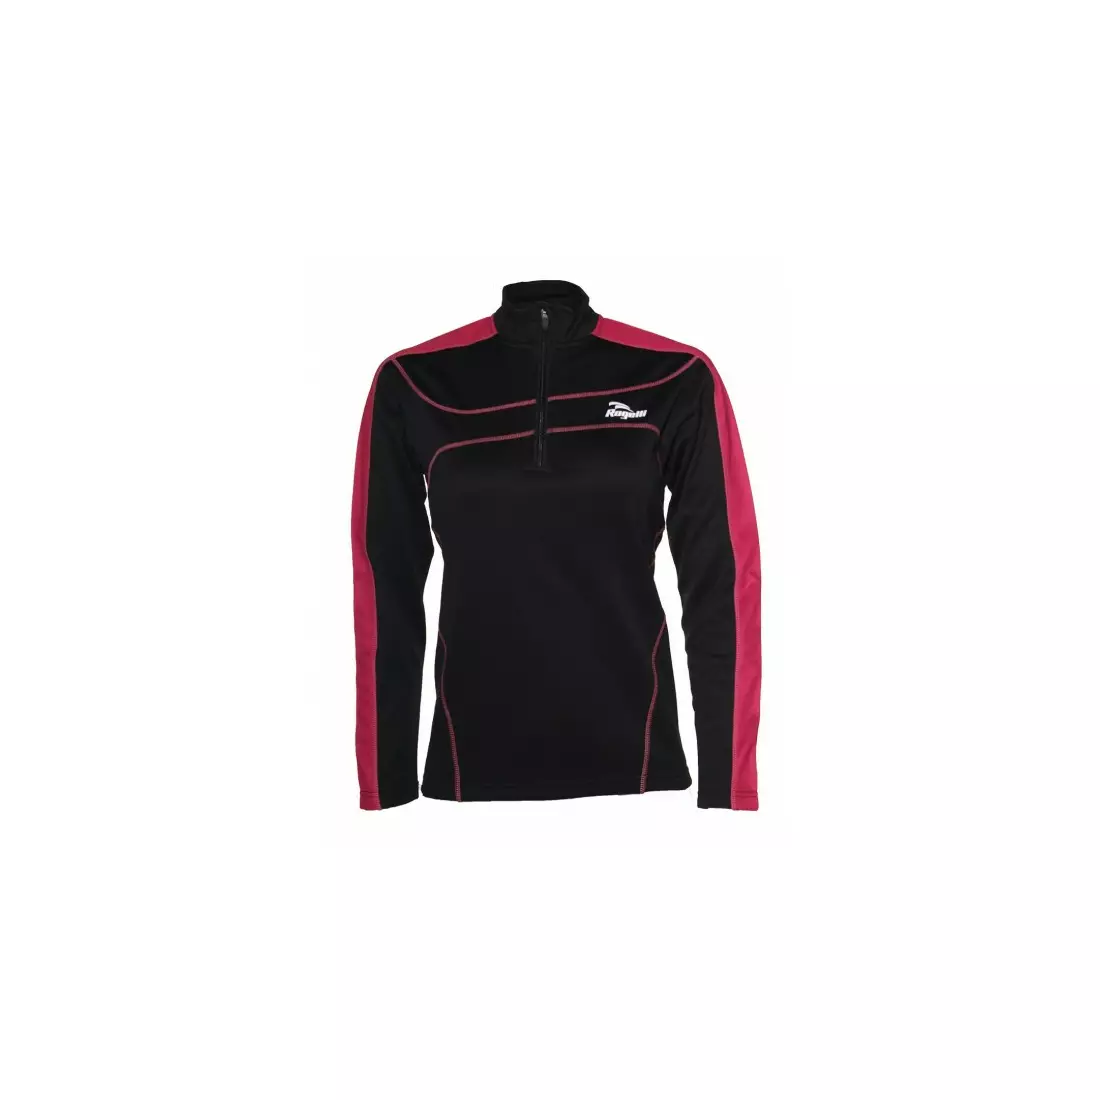 ROGELLI RUN MELS - dámská zateplená běžecká mikina - barva: Černá a růžová